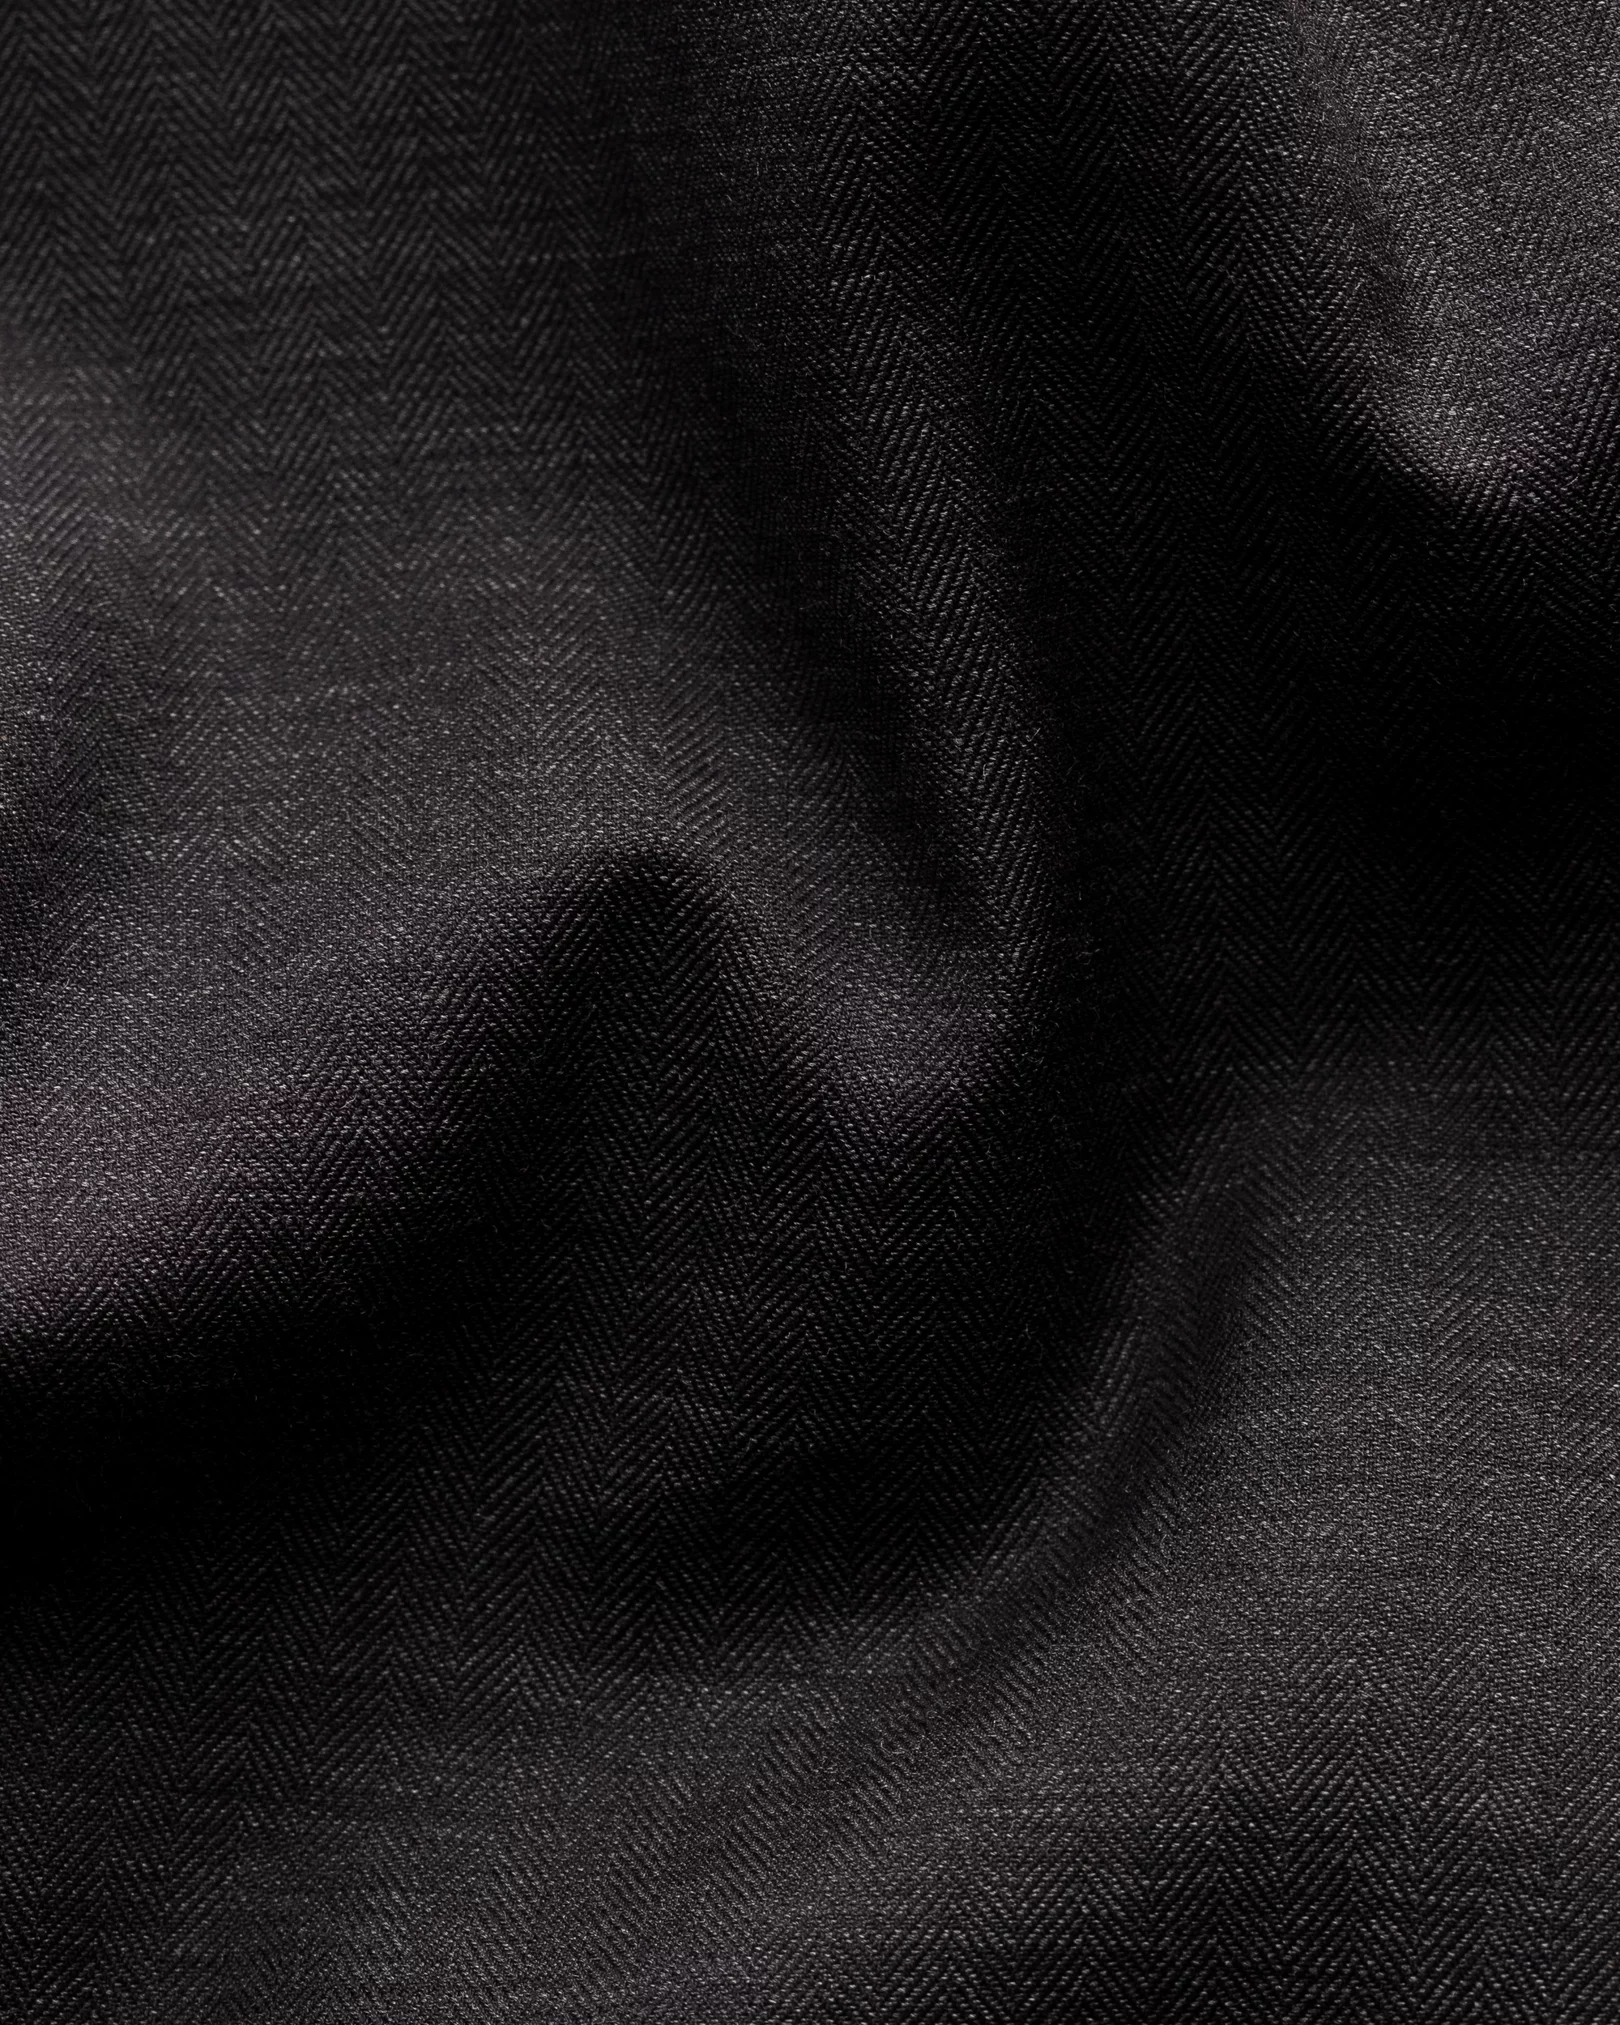 Eton - black flannel widespread